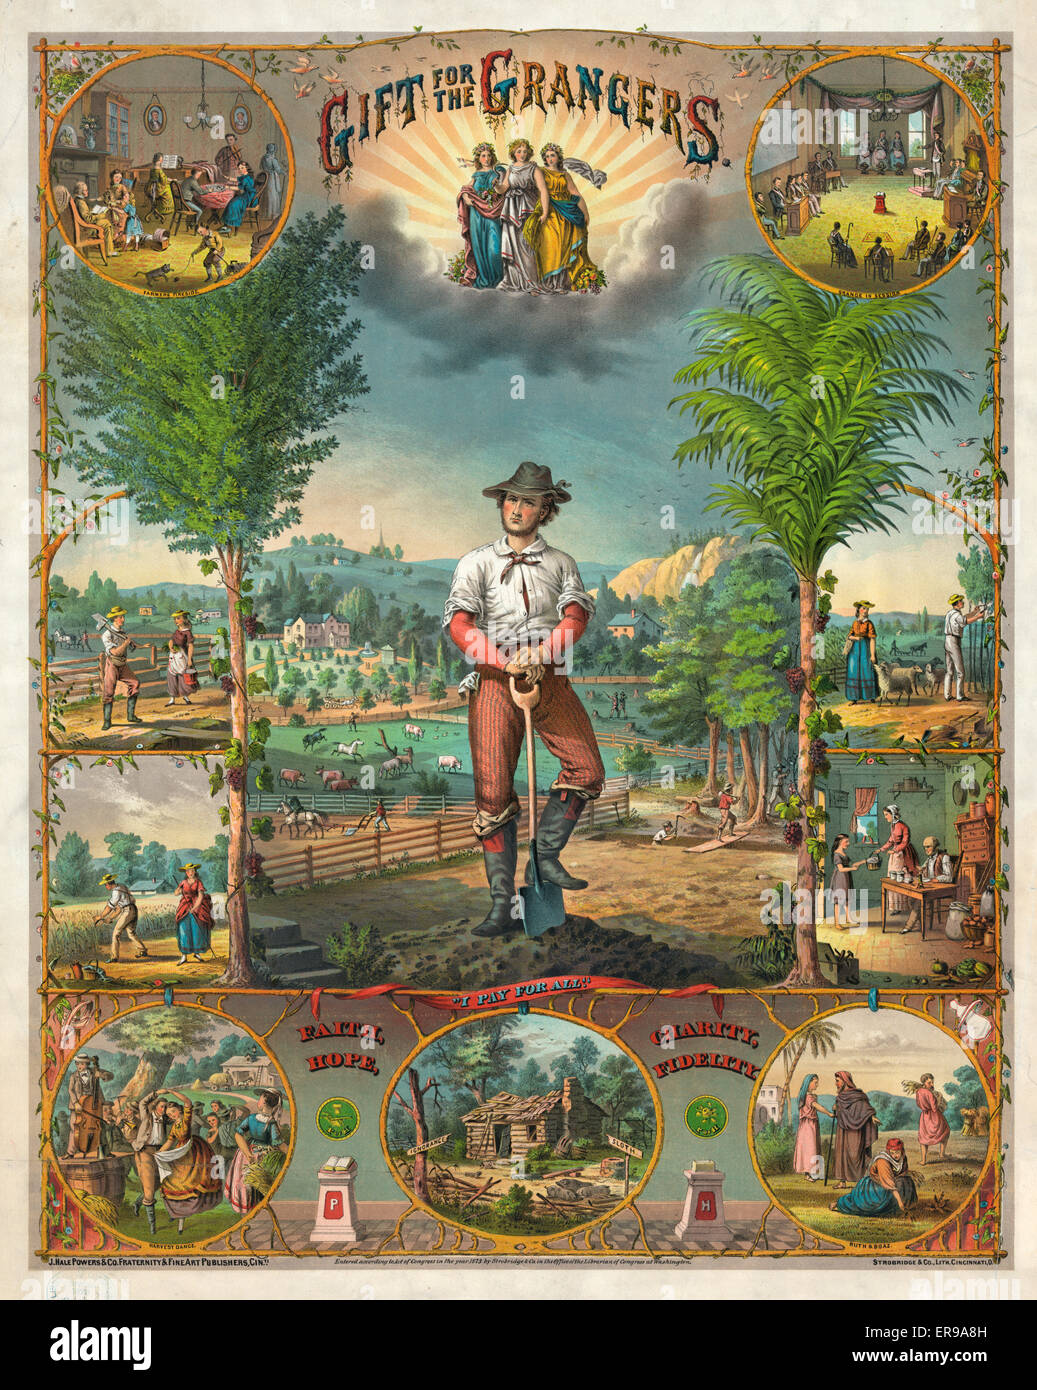 Regalo para el grangers. Impresión Promocional para Grange miembros mostrando escenas de la agricultura y de la vida agrícola. Fecha c1873. Foto de stock